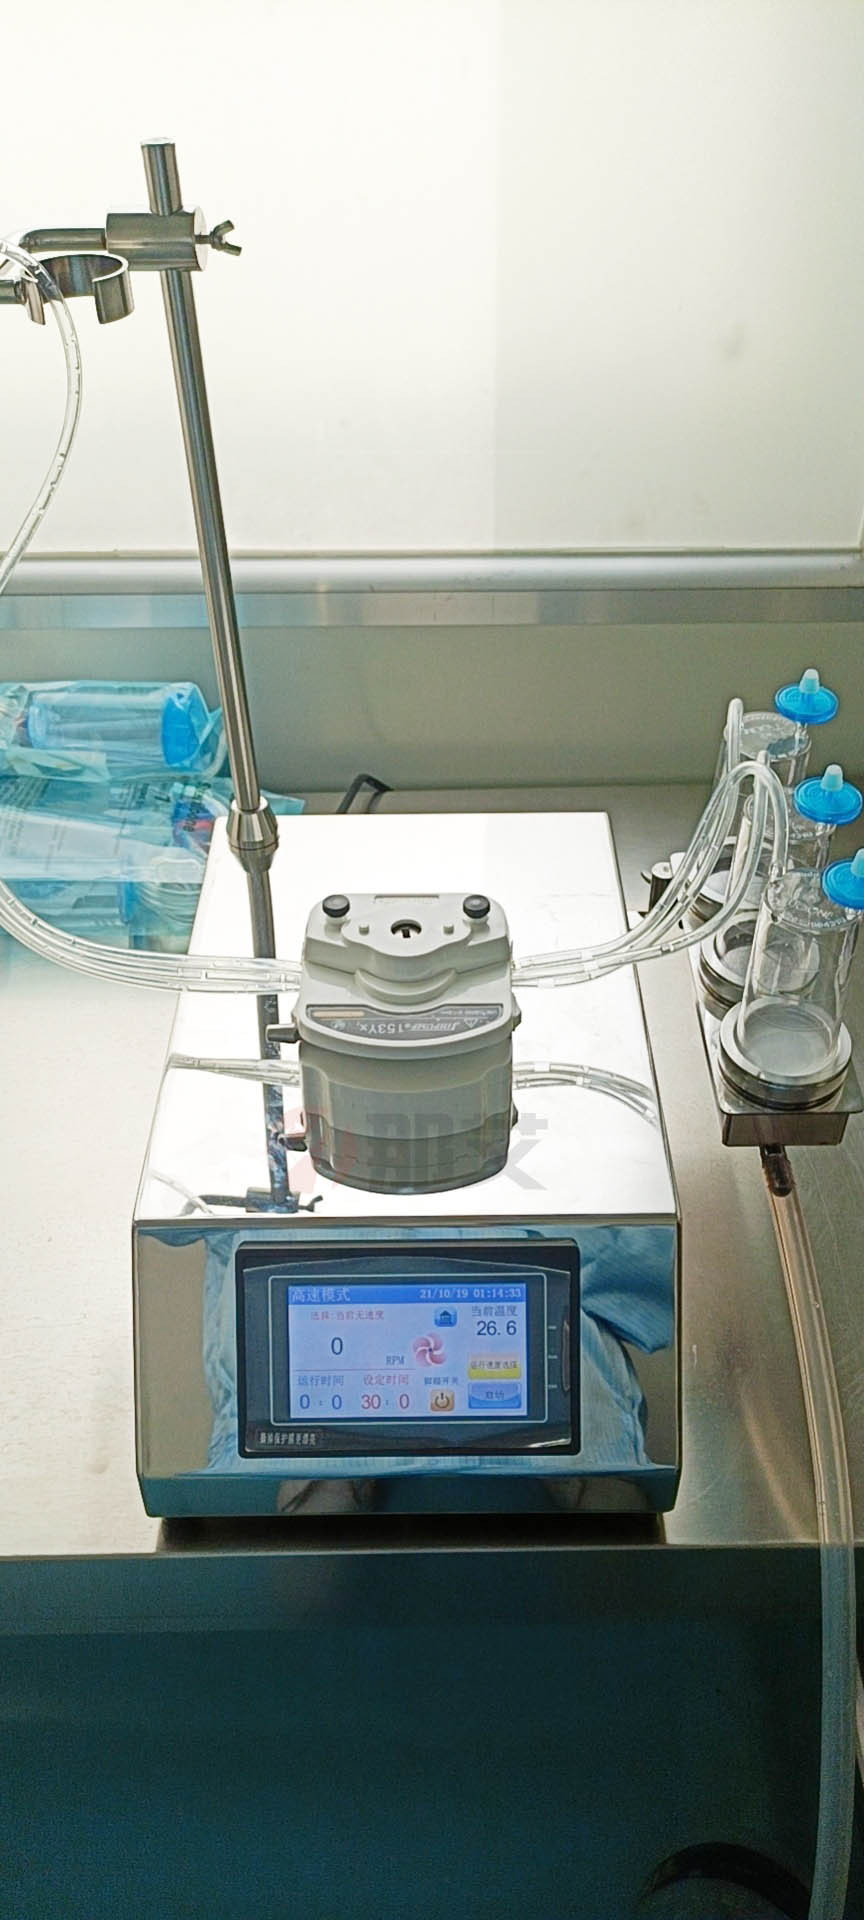 无菌检验用全封闭集菌器,可配合薄膜过滤器用于药品、食品、饮料等行业的微生物限度检查